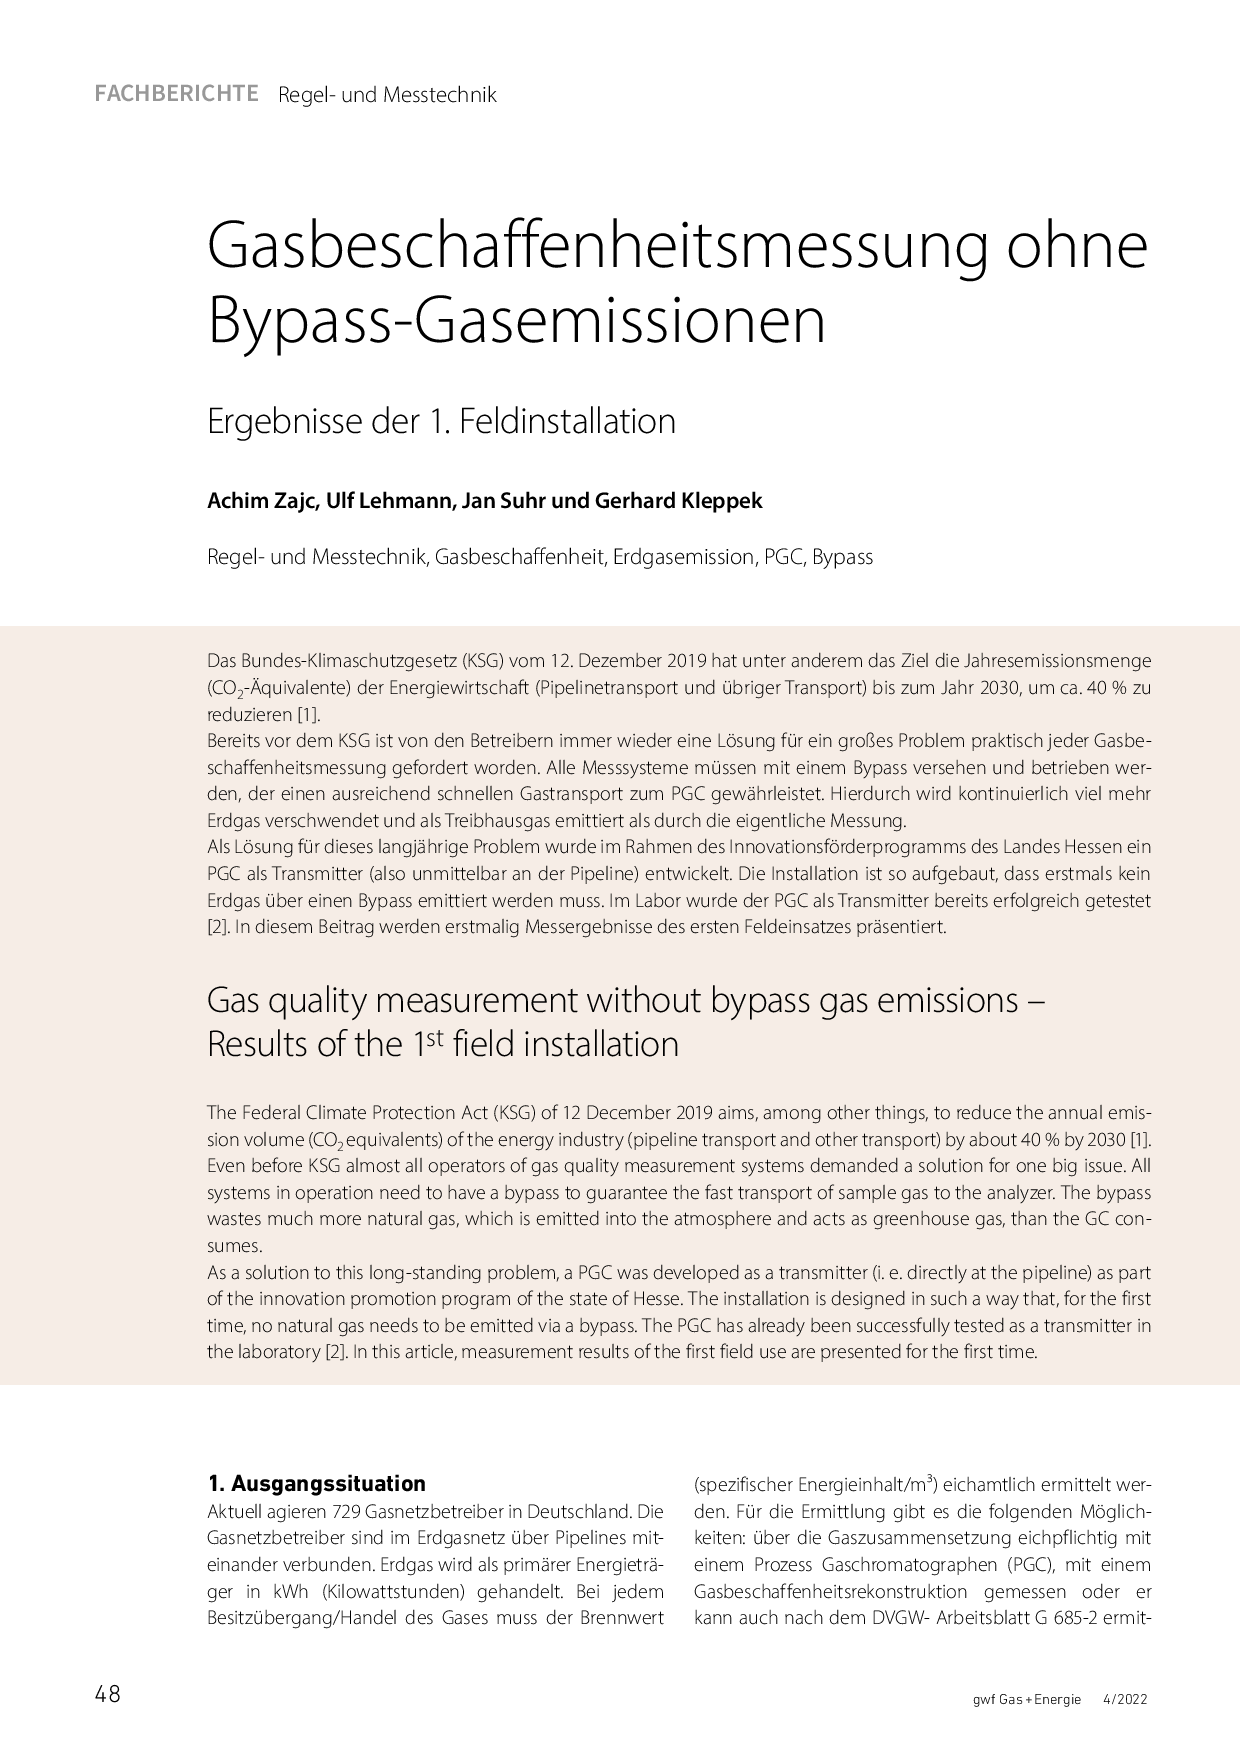 Gasbeschaffenheitsmessung ohne Bypass-Gasemissionen